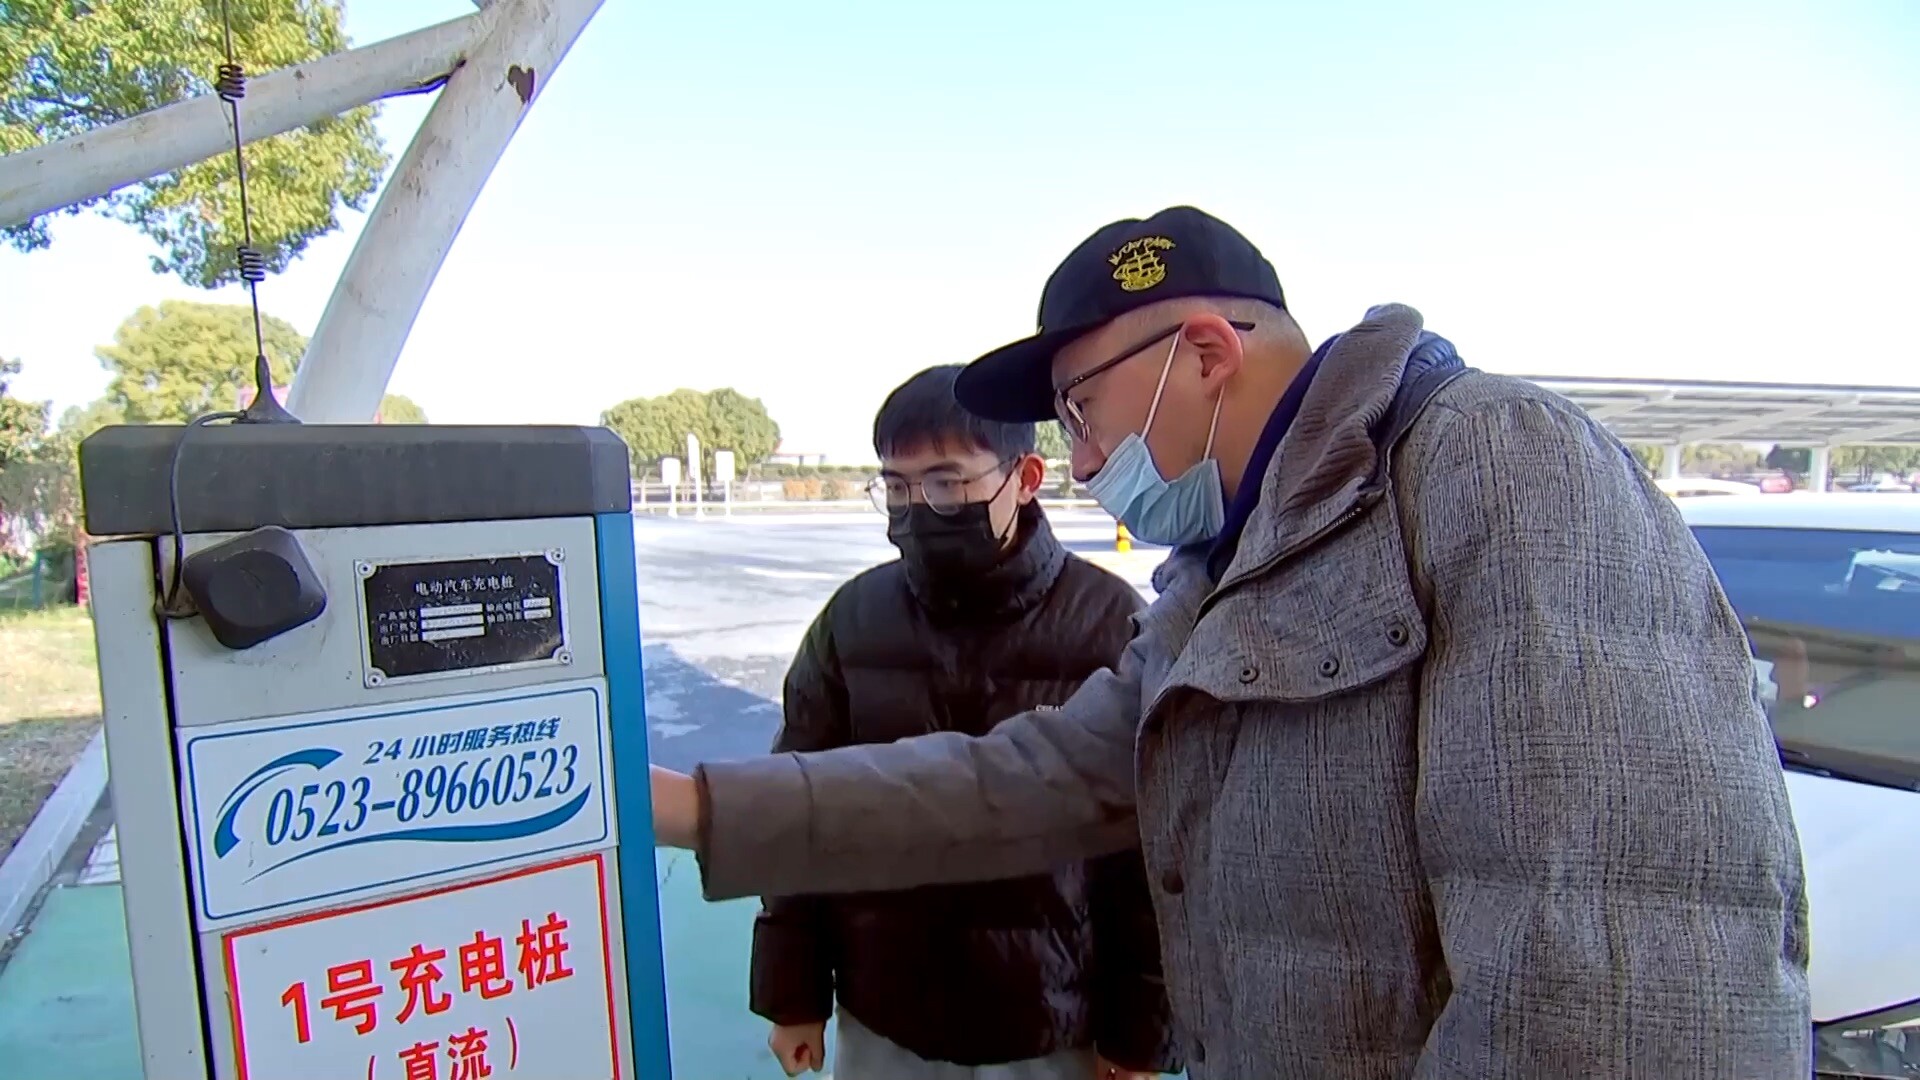 'จุดแวะพักรถ-ชาร์จแบตรถสุดล้ำ'ในจีน ใช้พลังงานสะอาดเกือบทั้งหมด